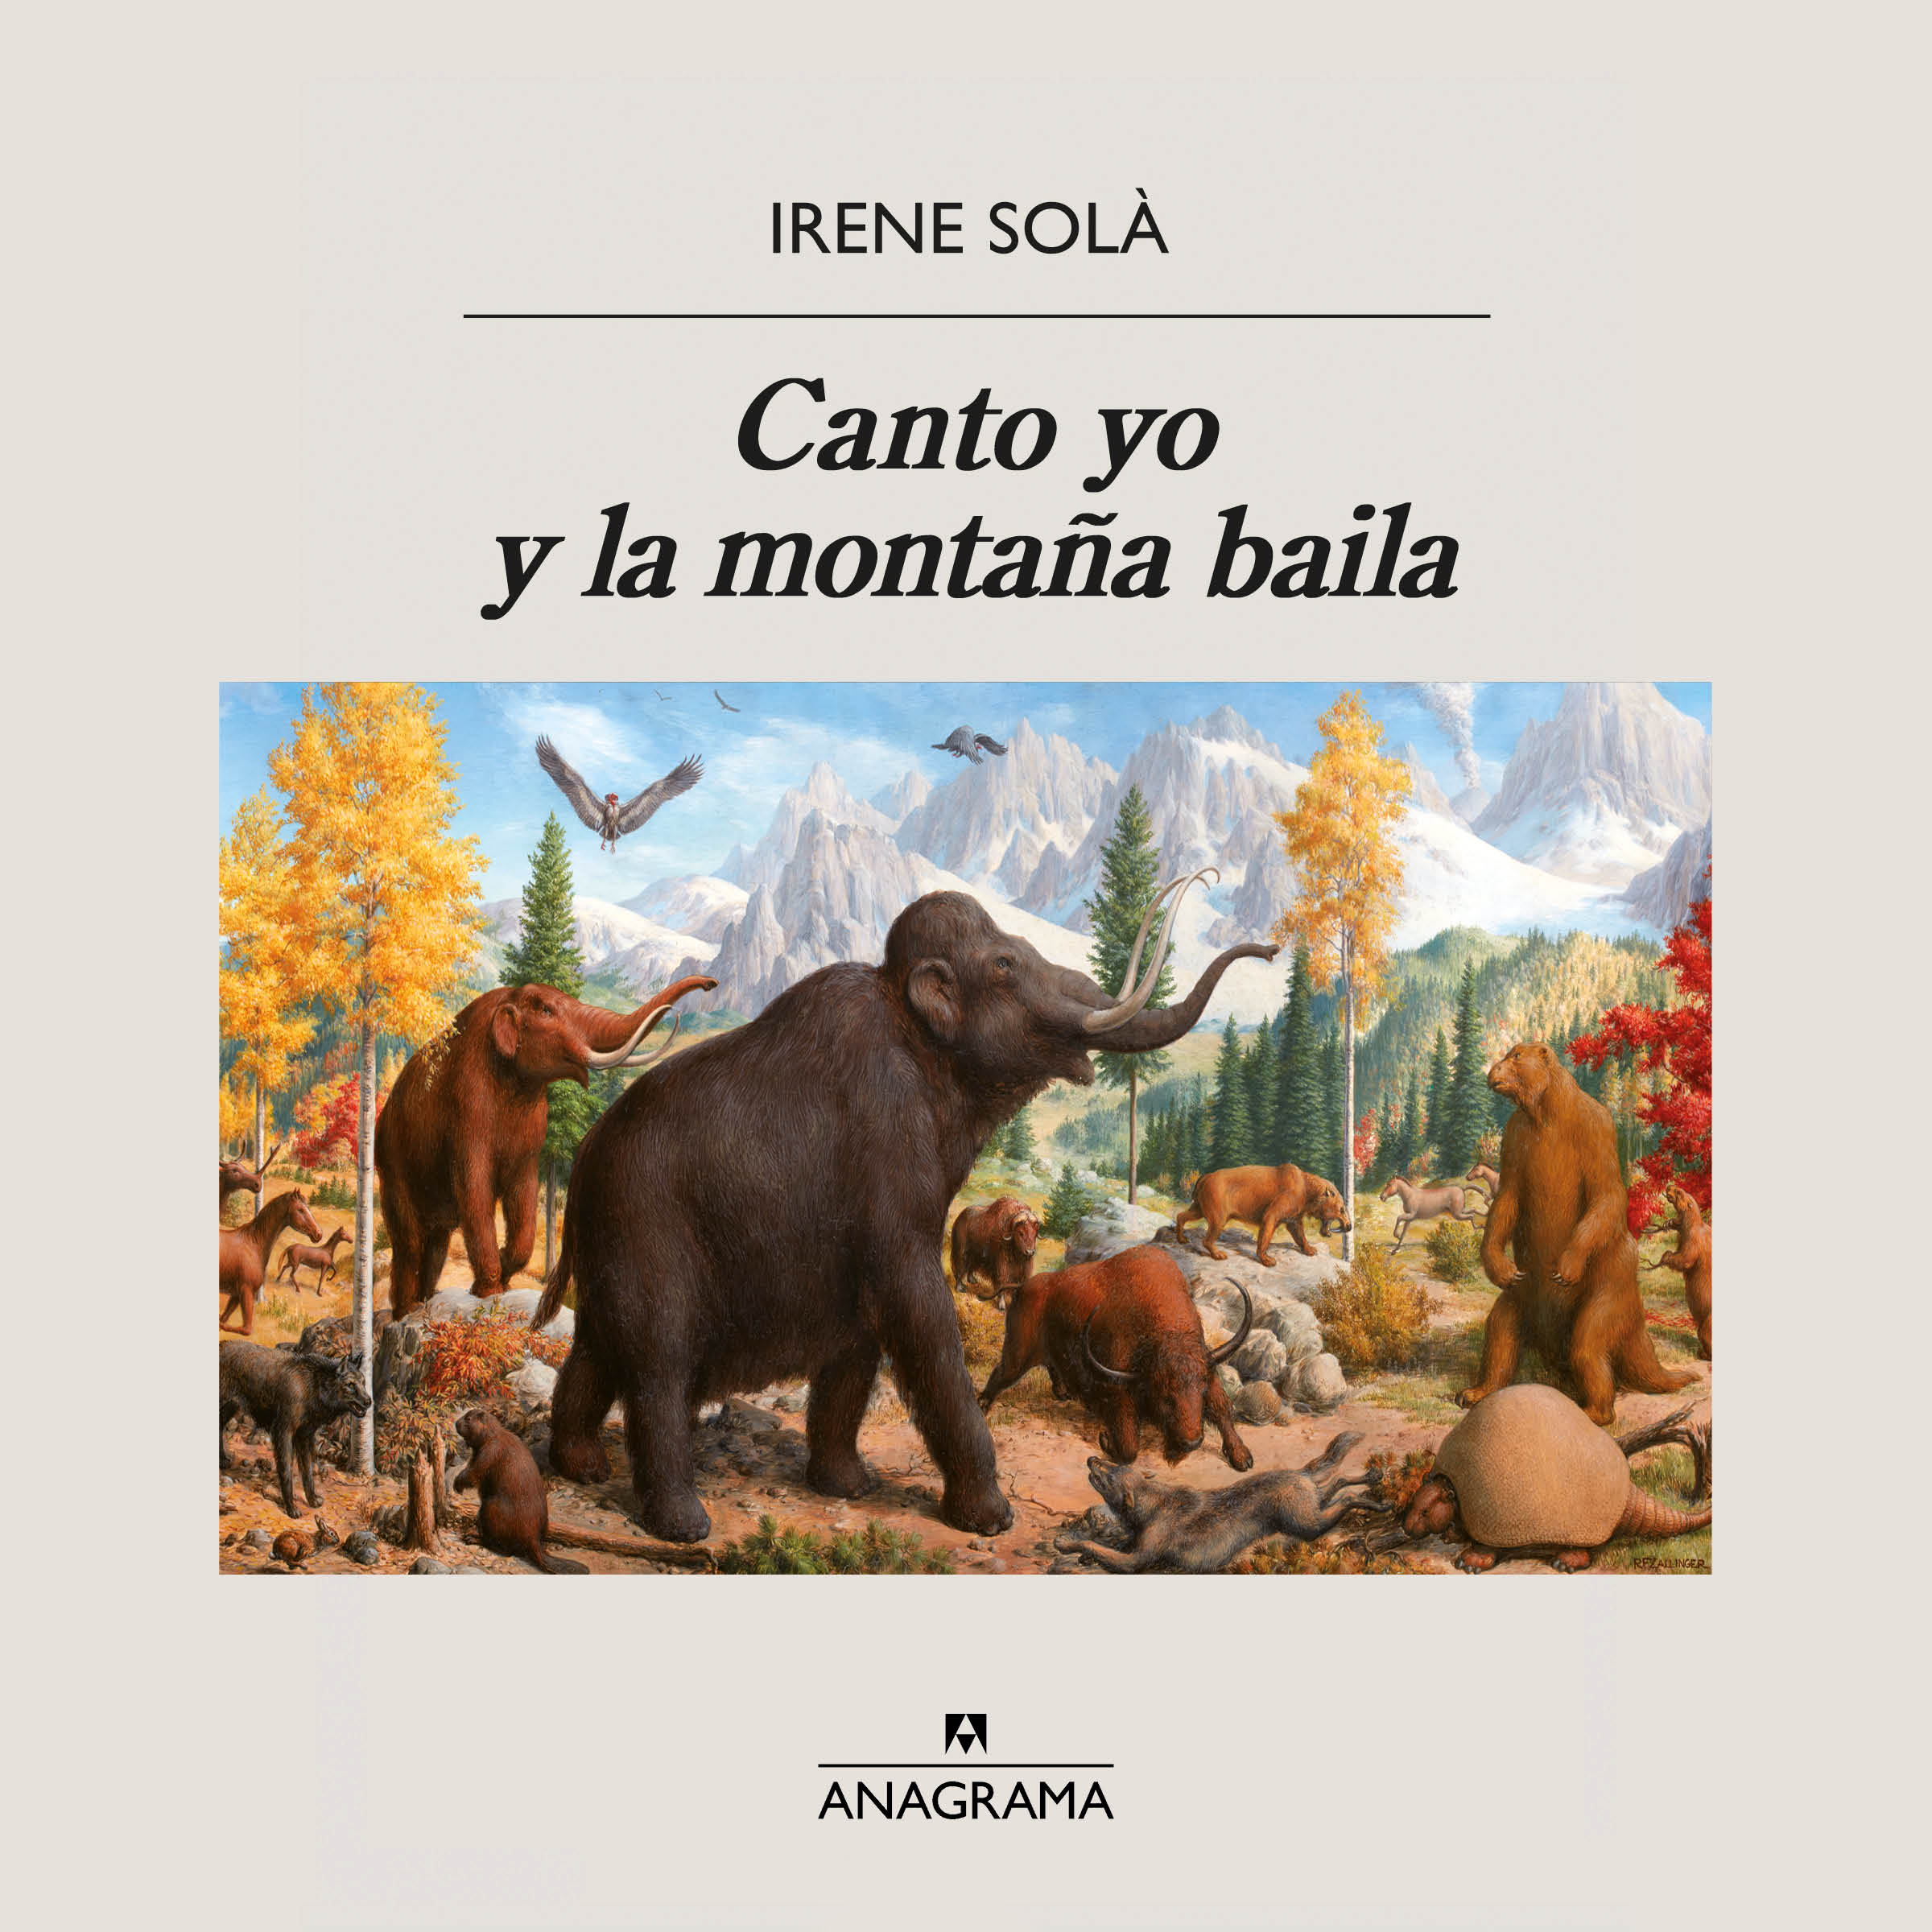 Canto yo y la montaña baila - Irene Solà: Autora, sinopsis, editorial y  toda la información